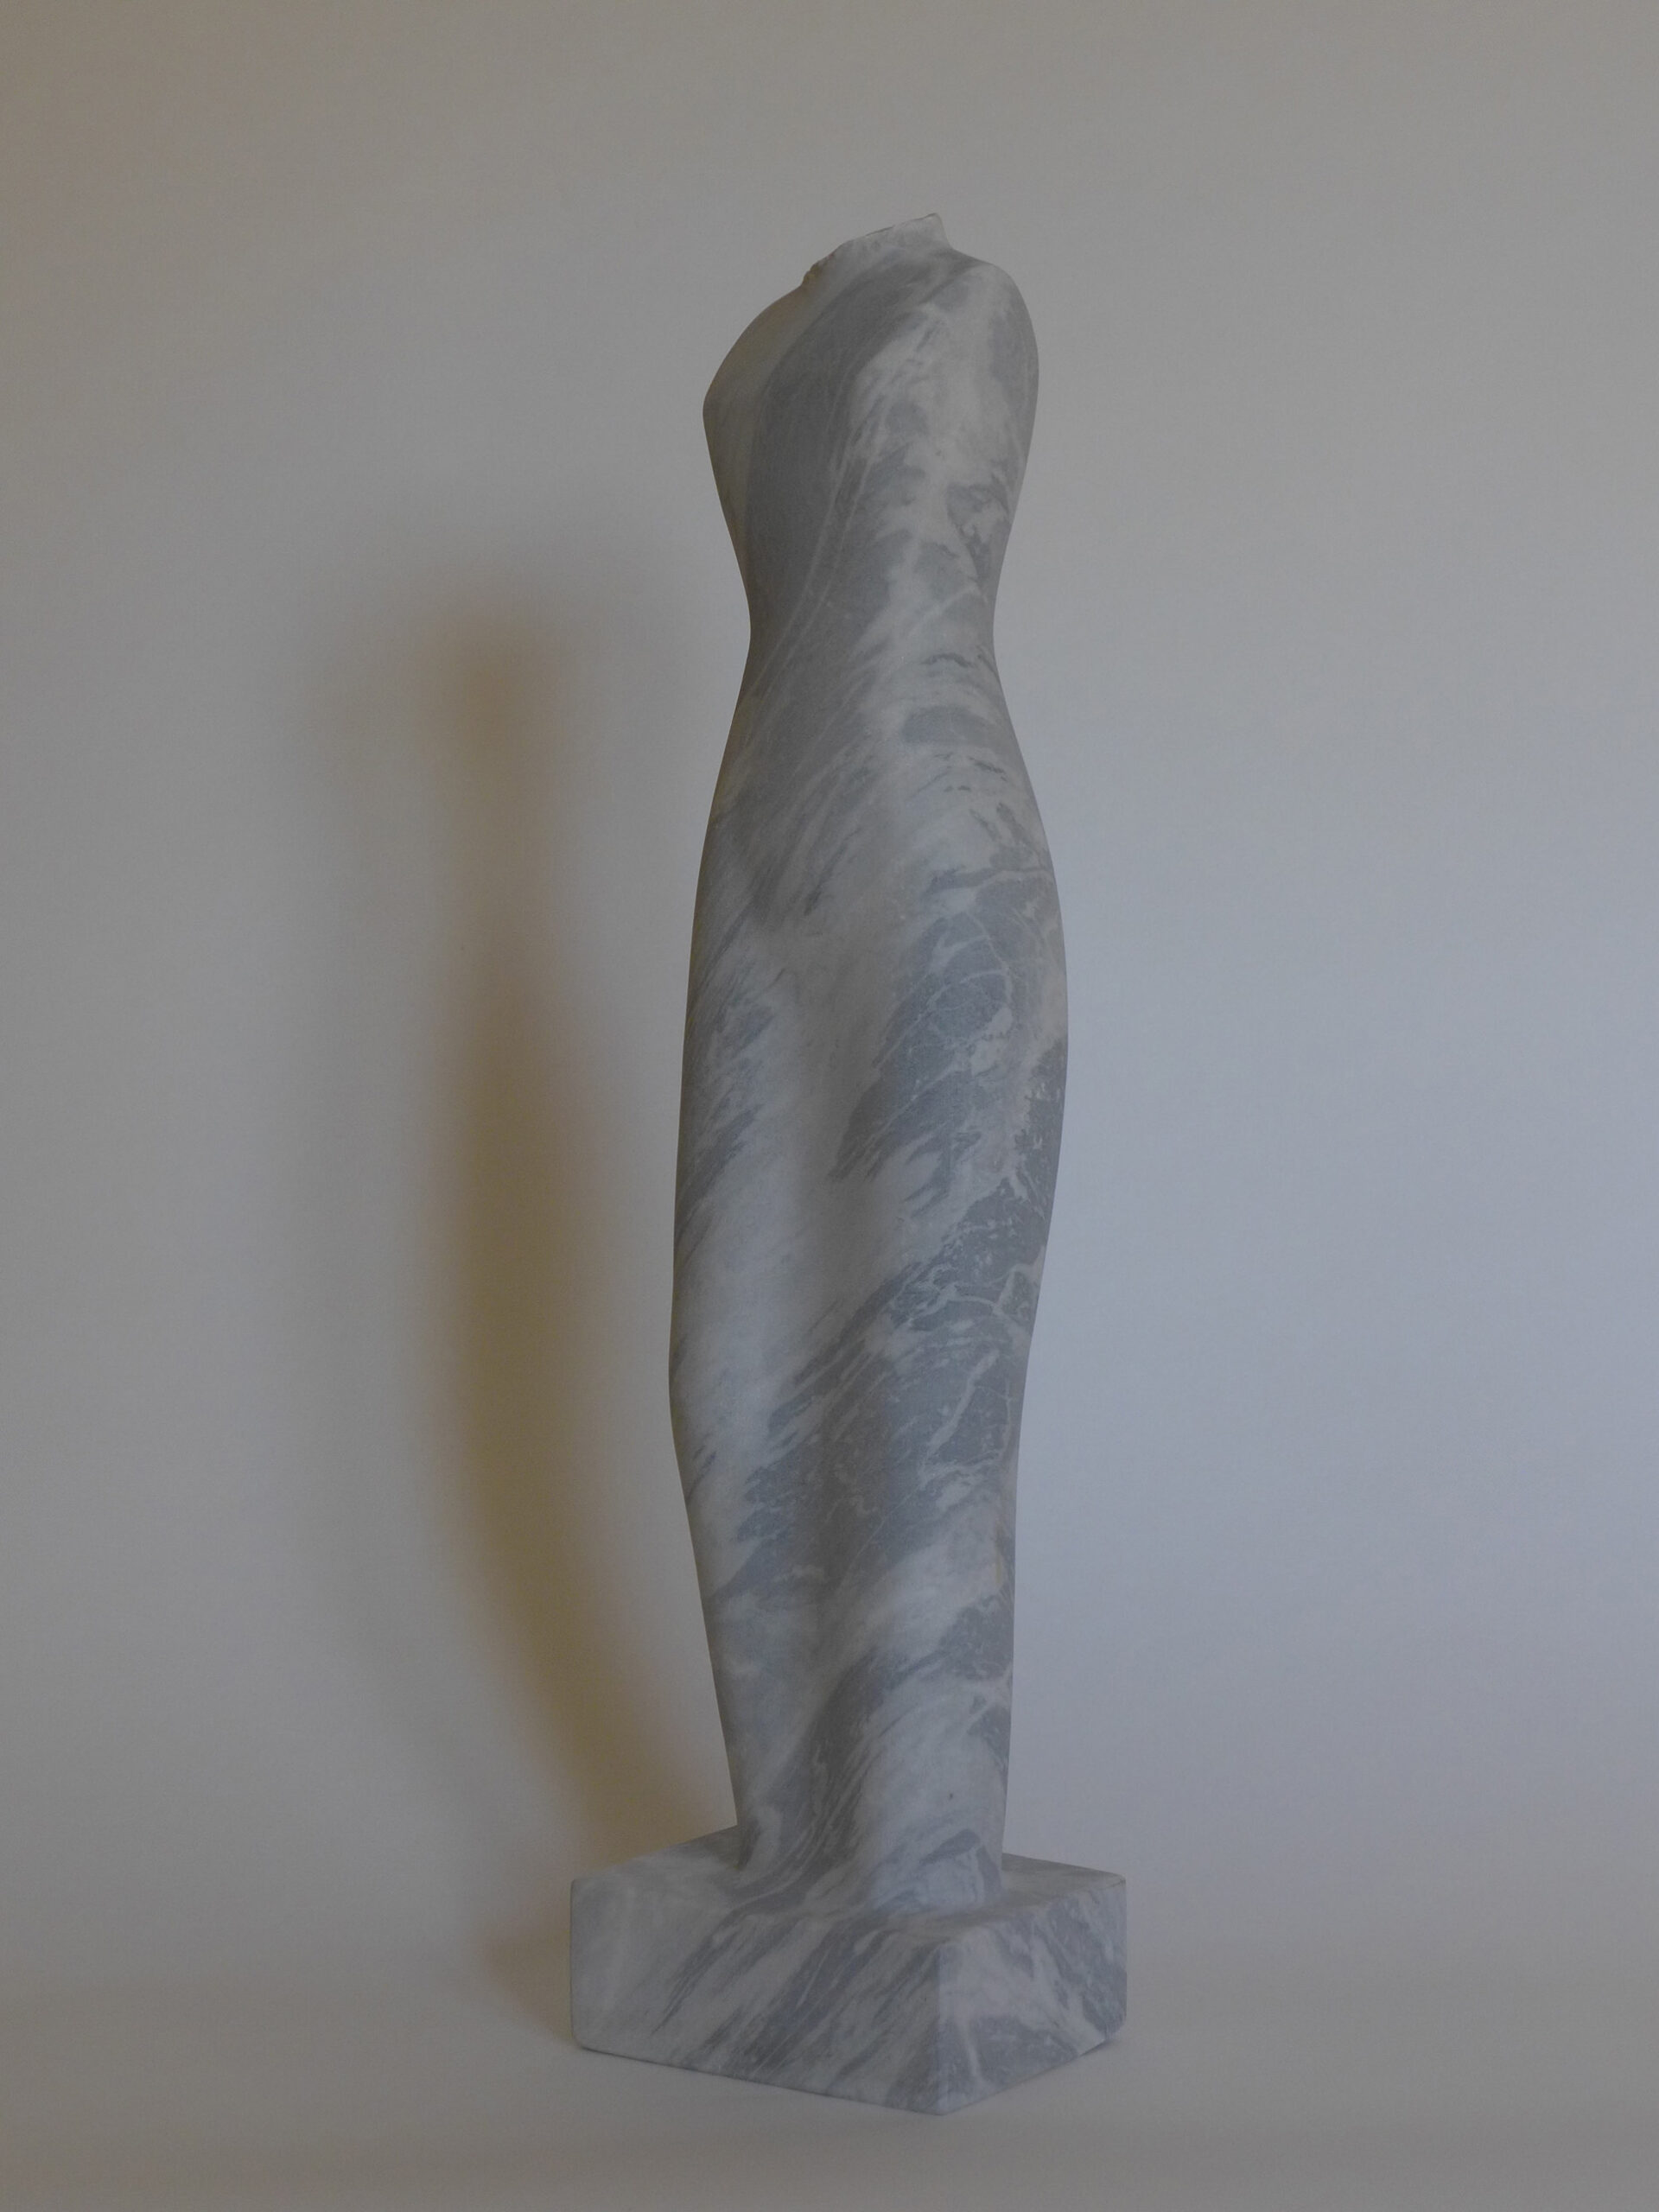 17, Ragazza, 2009, marbre Bardiglio de Carrare, h 69 cm